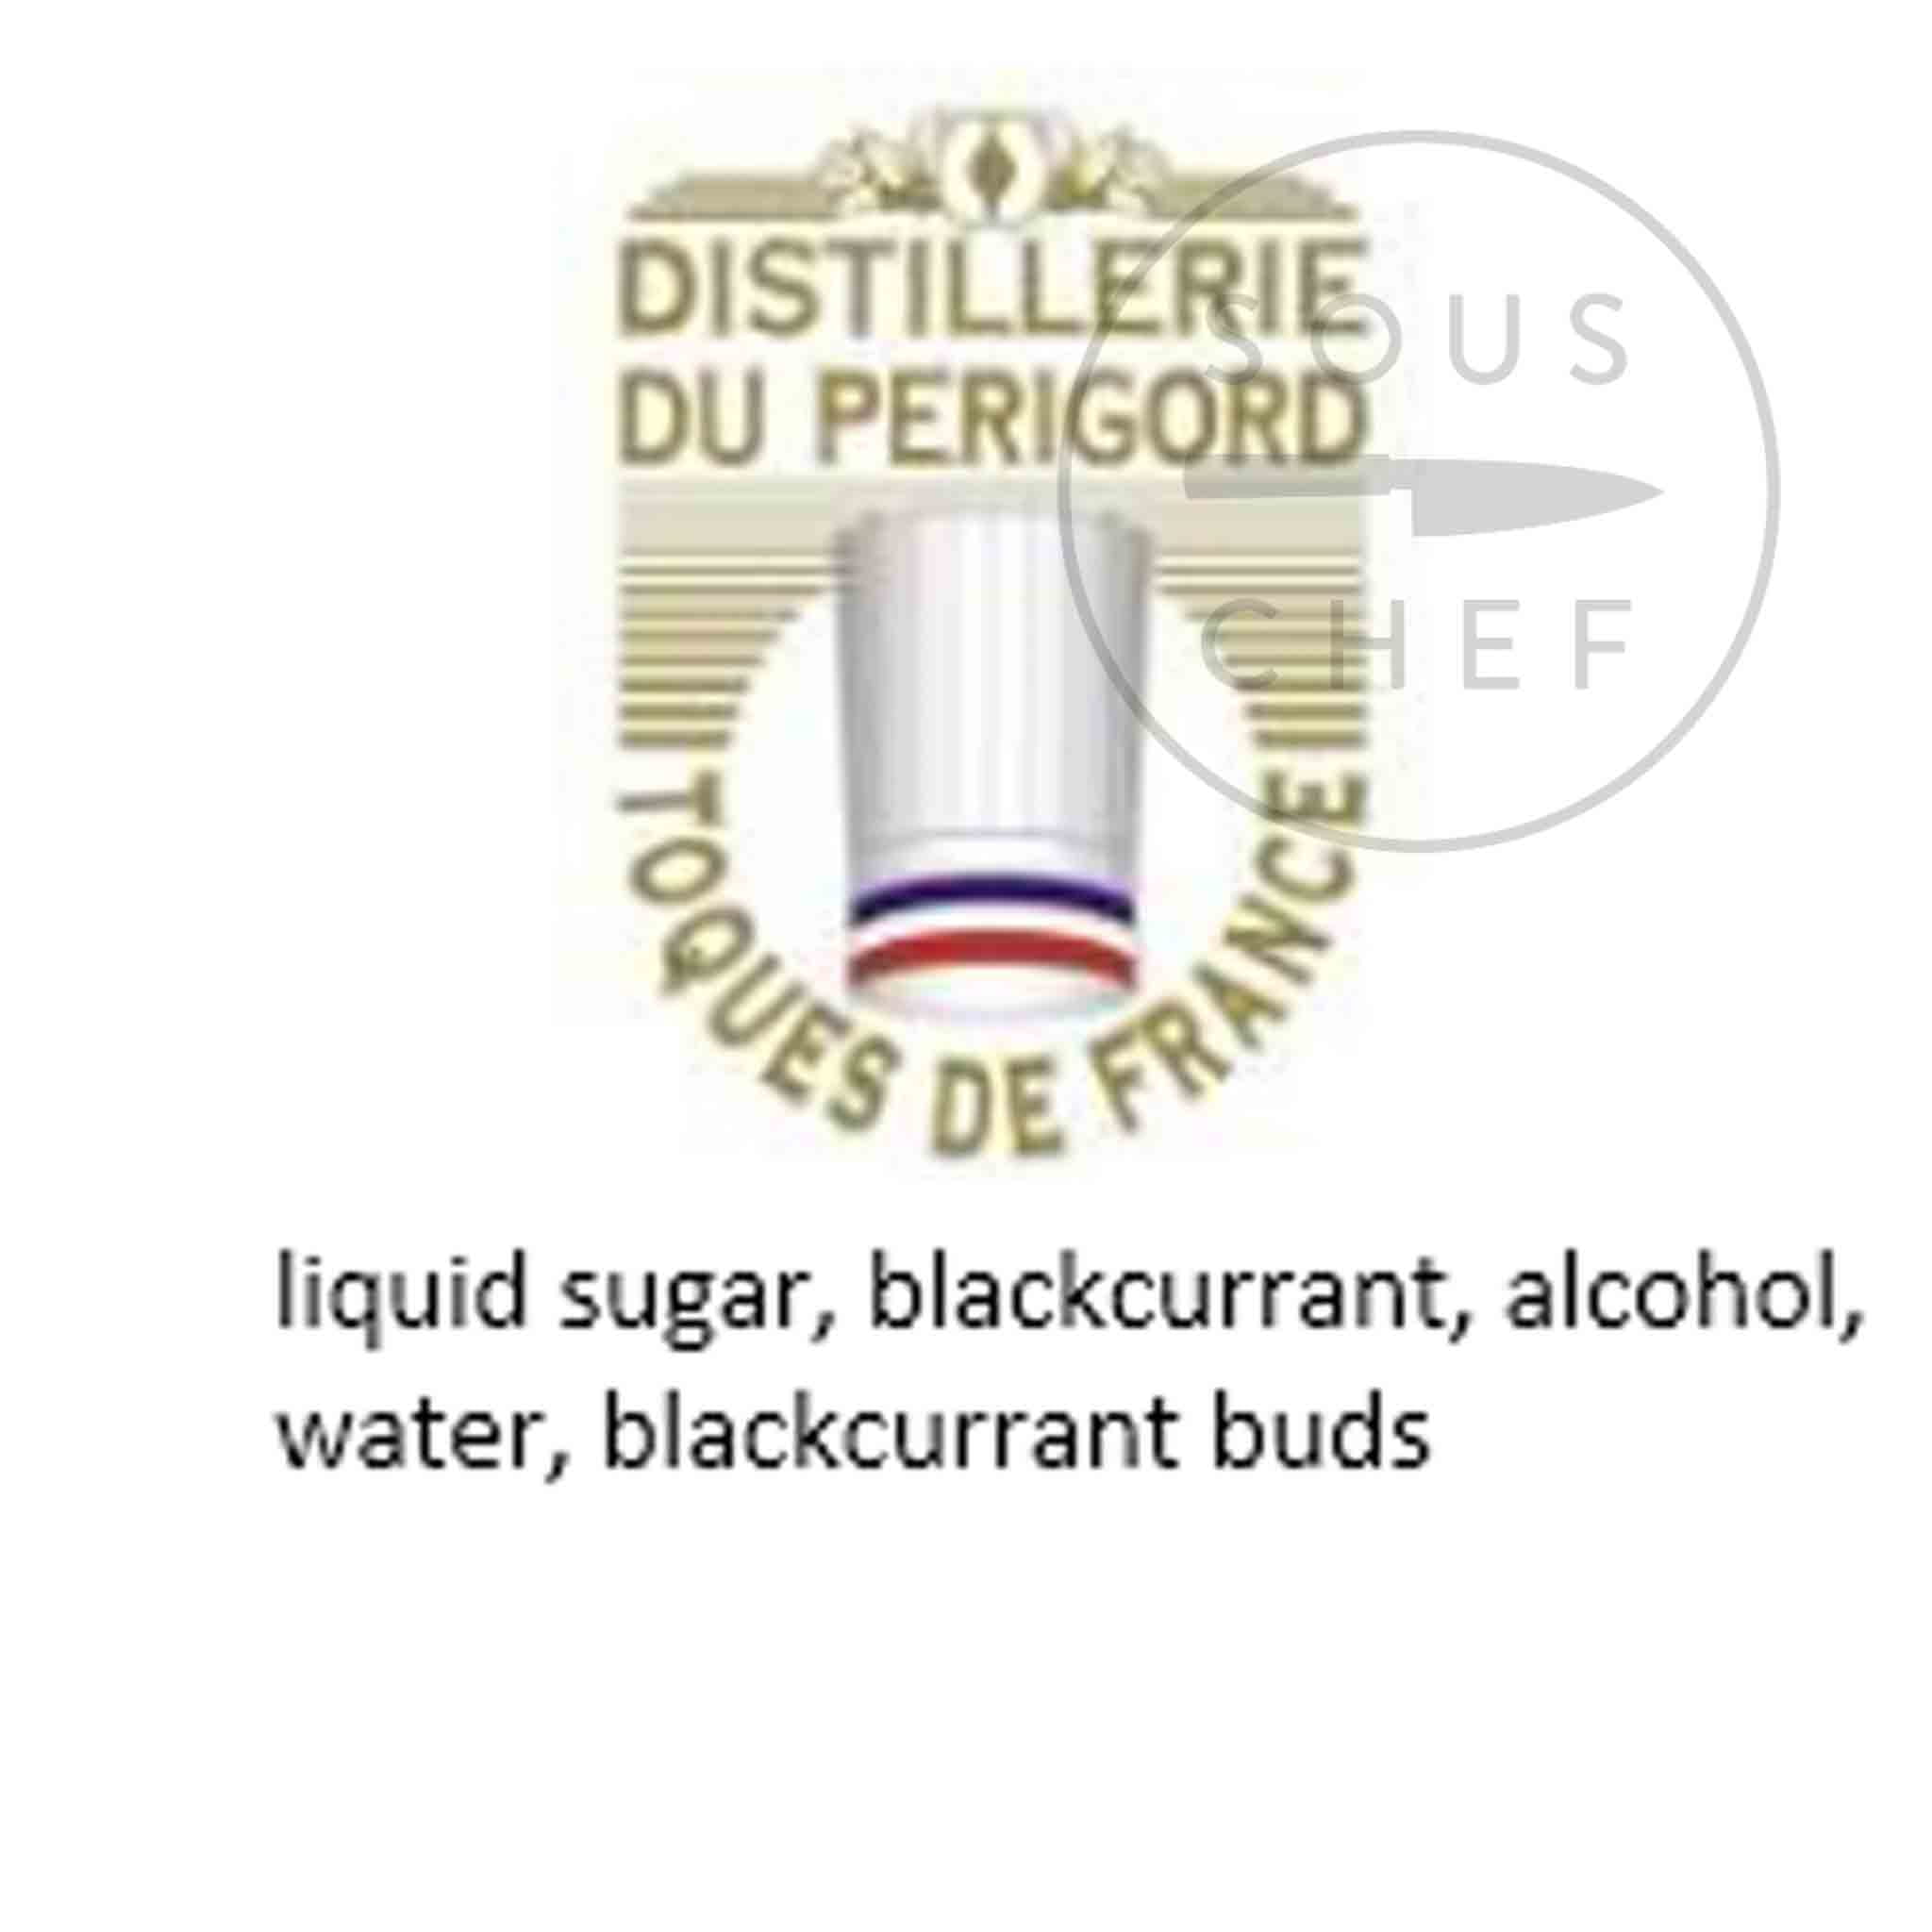 Cherry Rocher Crème de Cassis, Blackcurrant Liqueur, 500ml